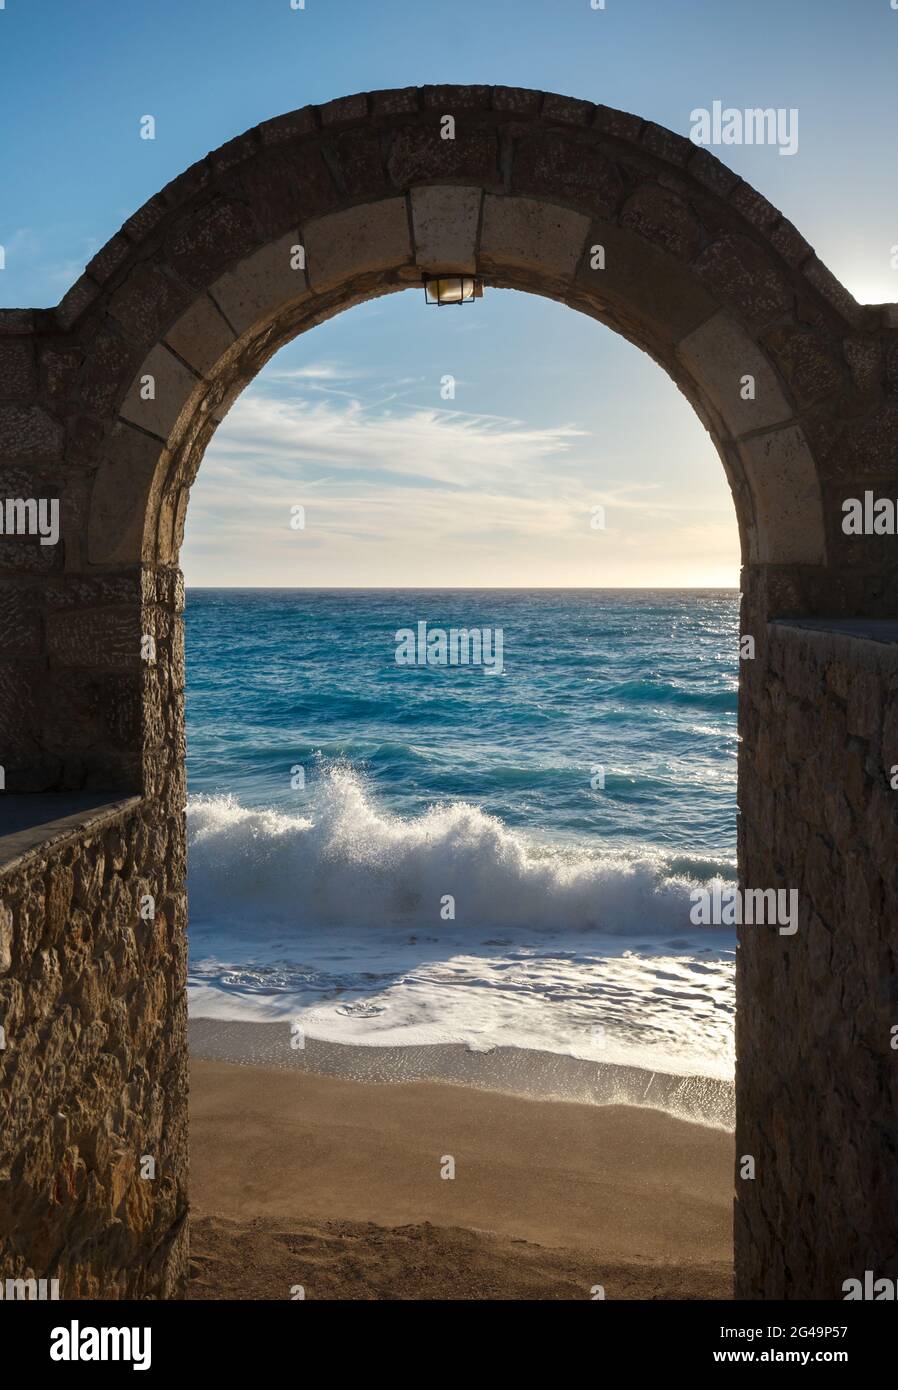 Seashore through the arch door Stock Photo